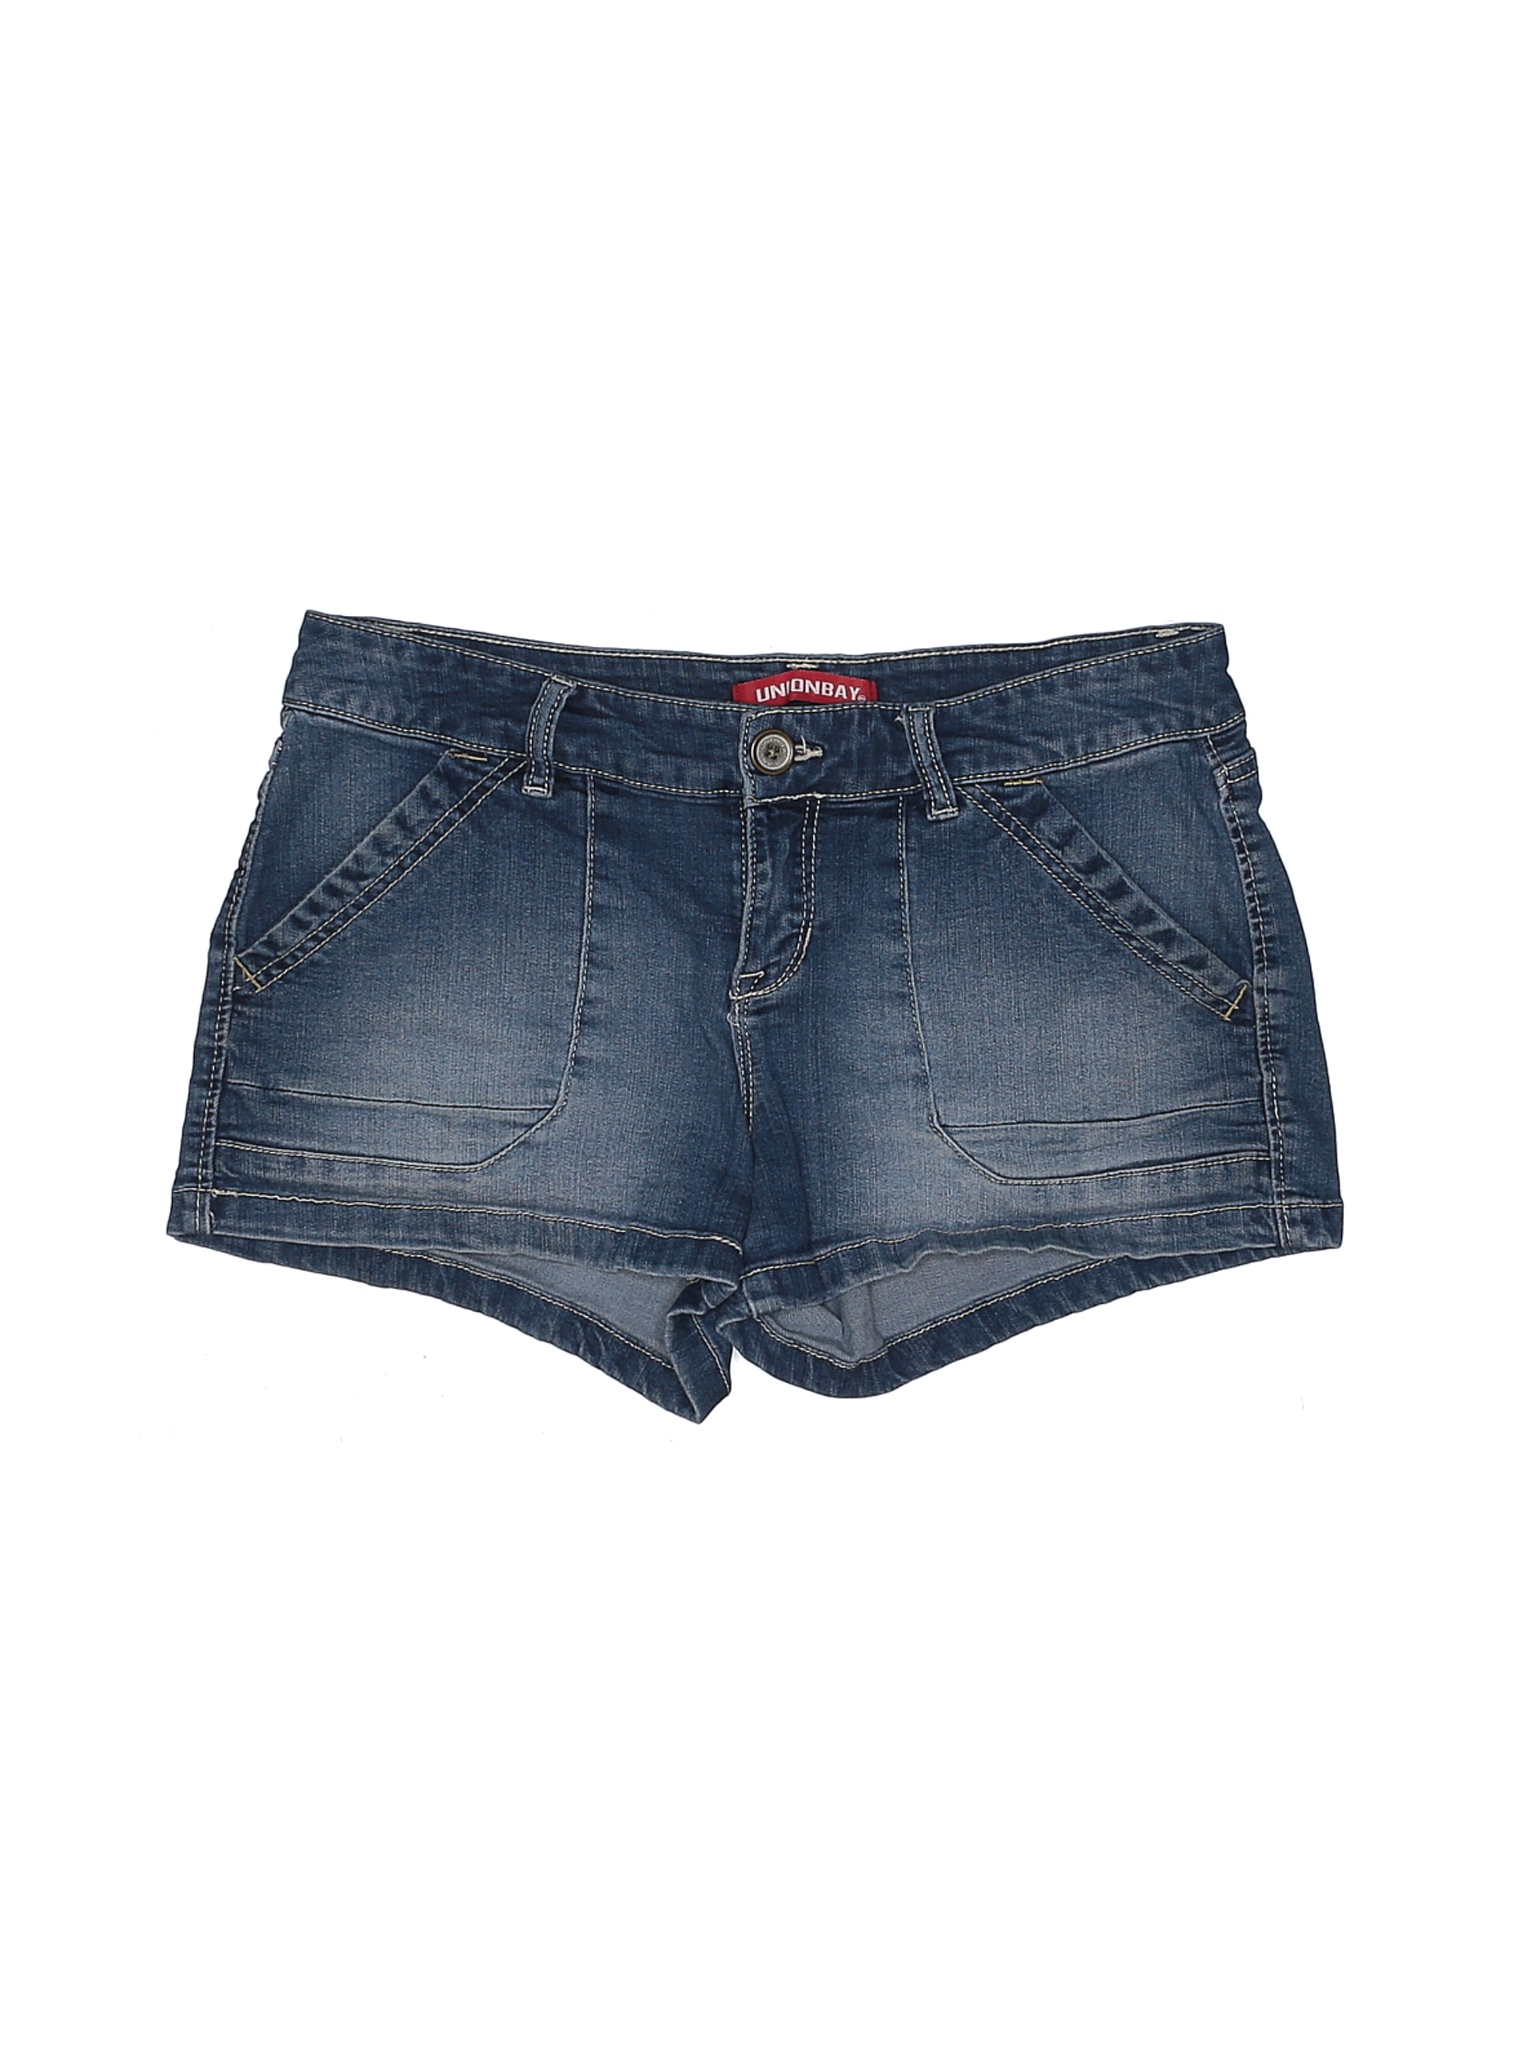 Unionbay Women Blue Denim Shorts 9 | eBay